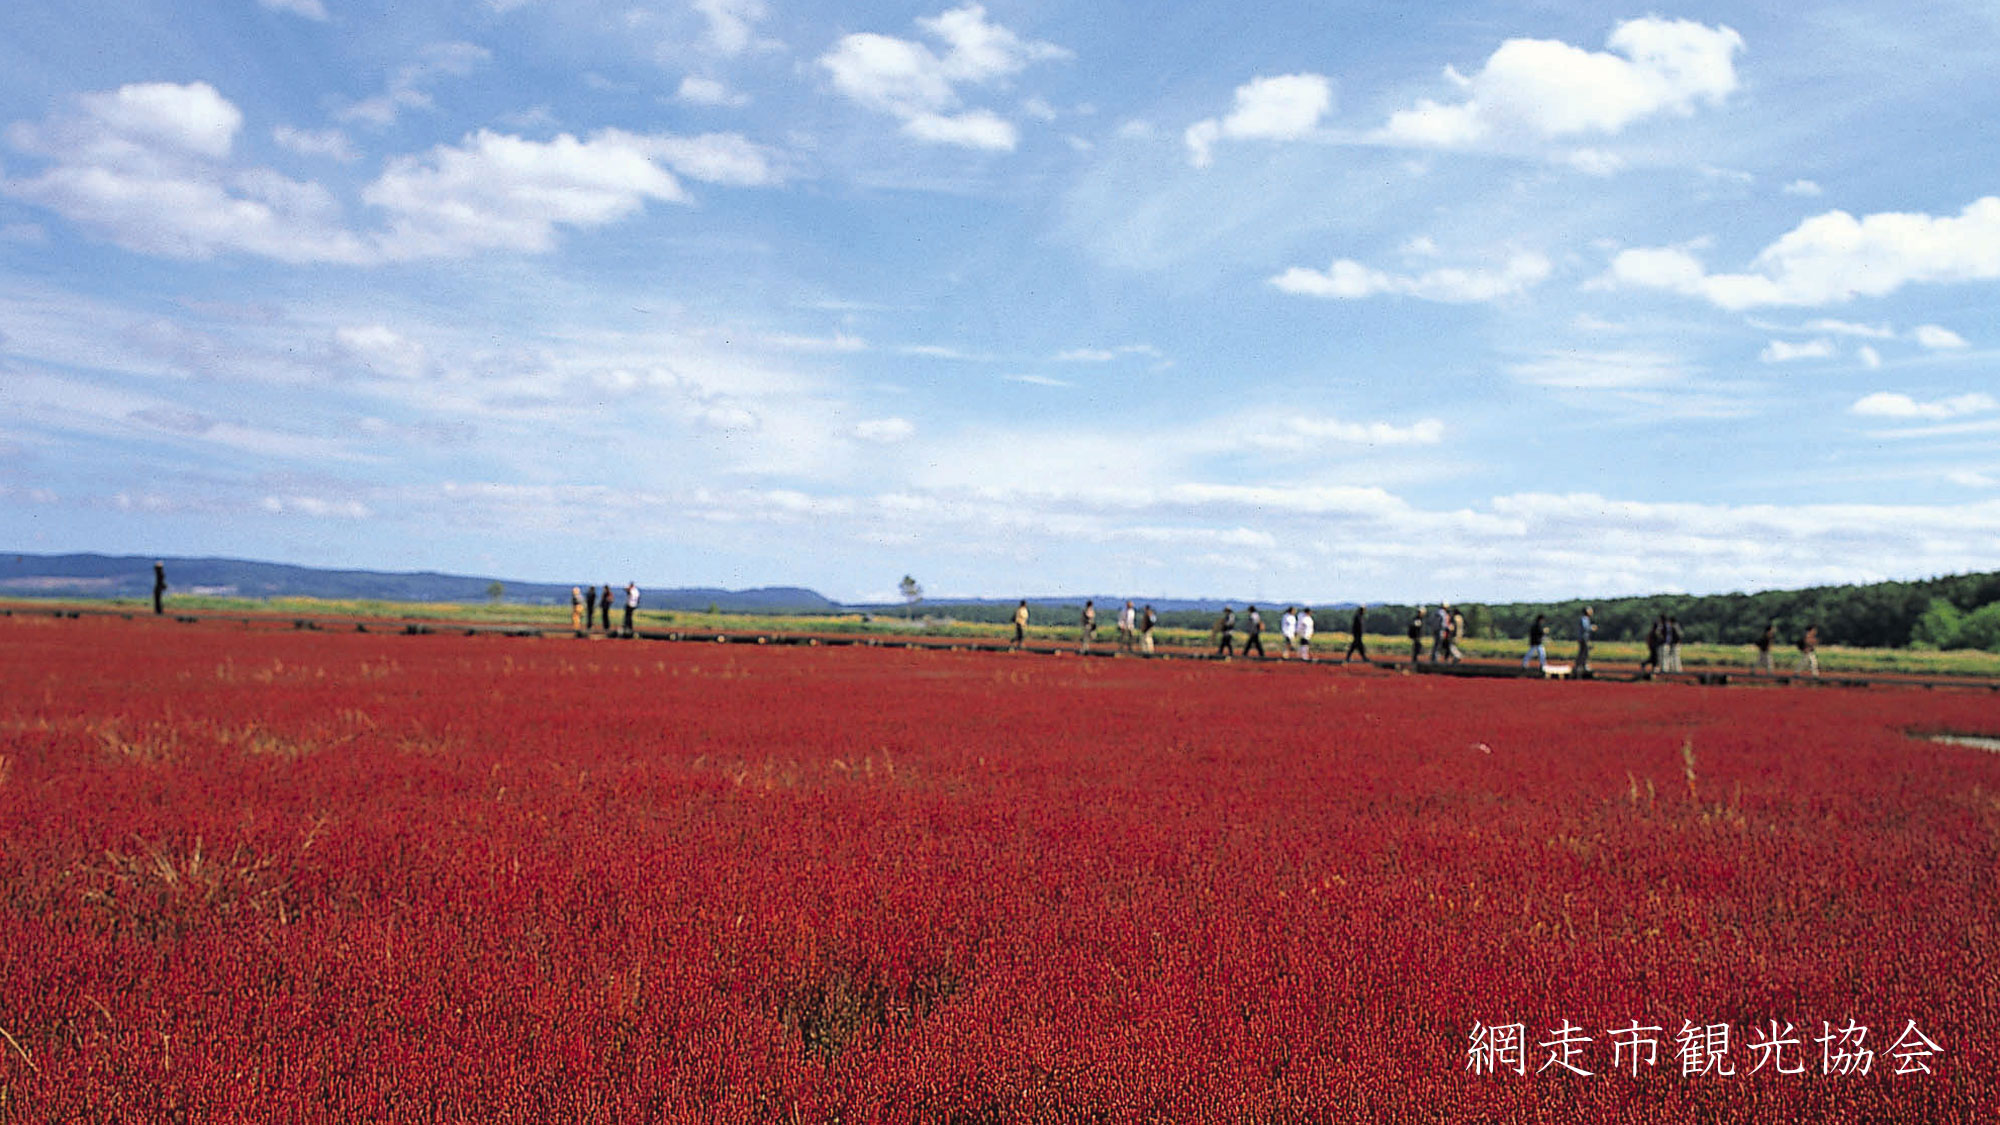 *［能取湖］当館より車で約17分。「真紅のカーペット」と呼ばれるサンゴ草の例年見頃は9月中旬～下旬